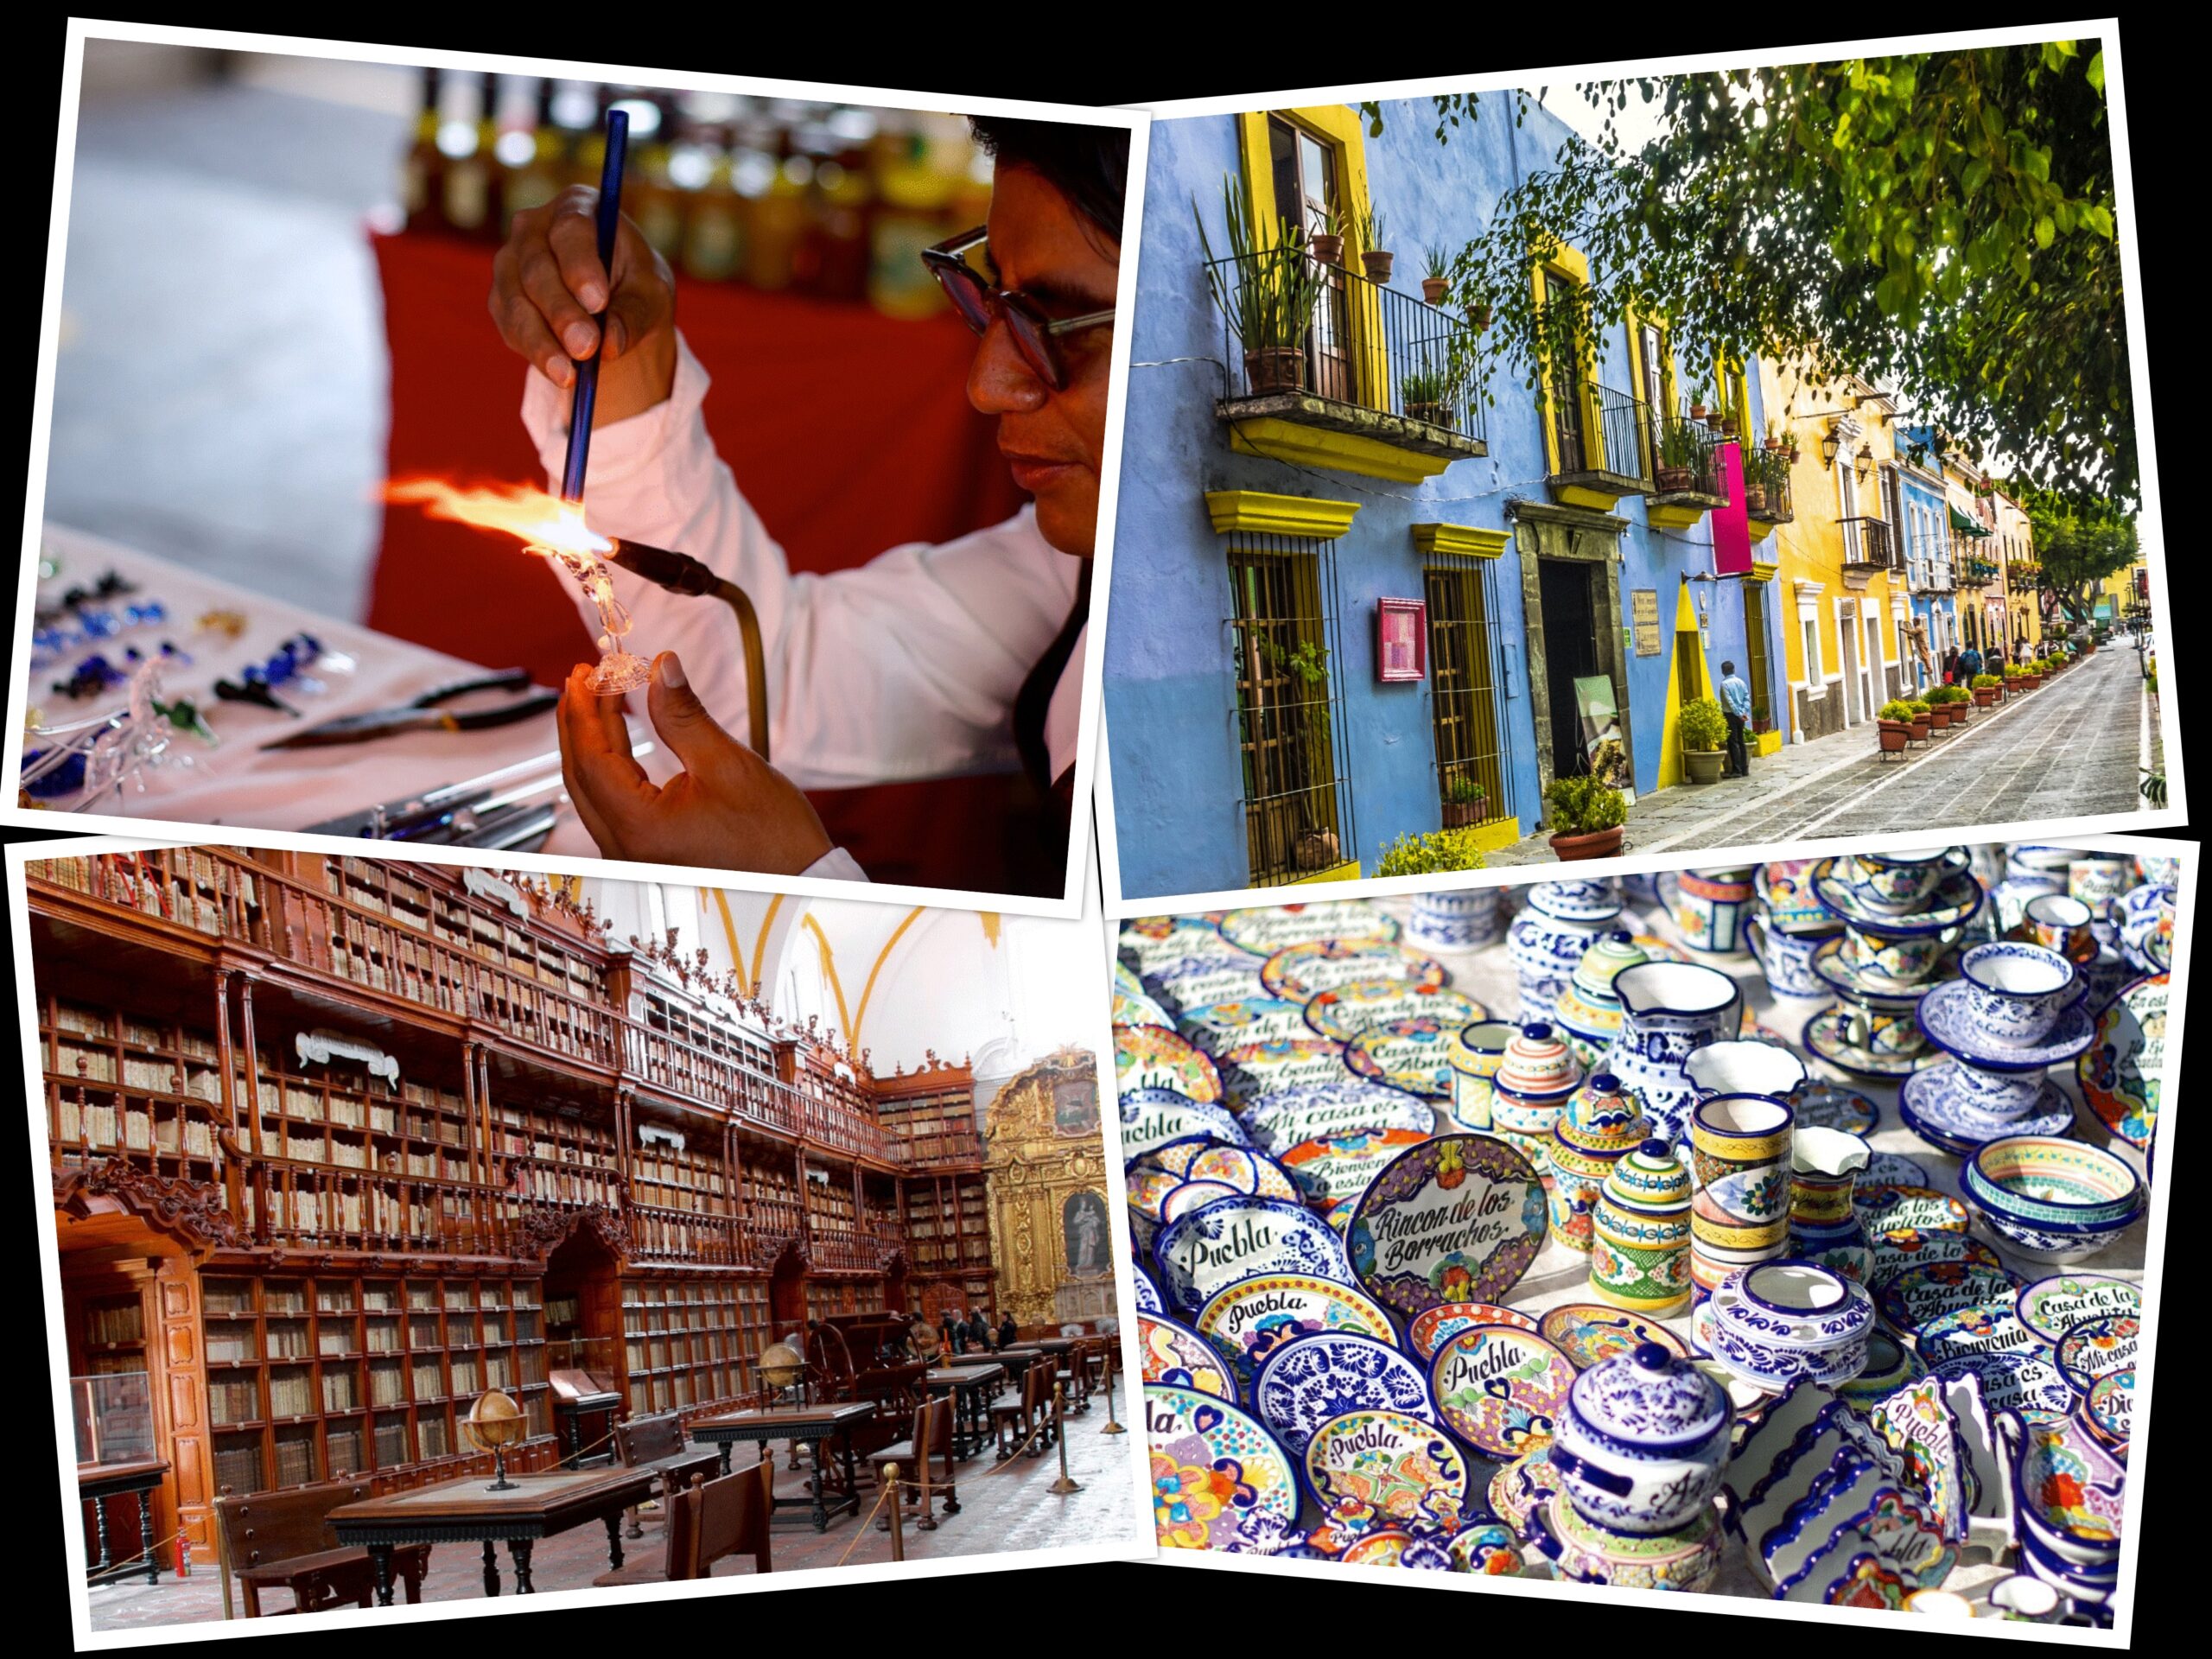 Primul oraș „perfect” din Americi. Doar la Puebla se găsește celebra ceramică Talavera. Și cel mai mic vulcan